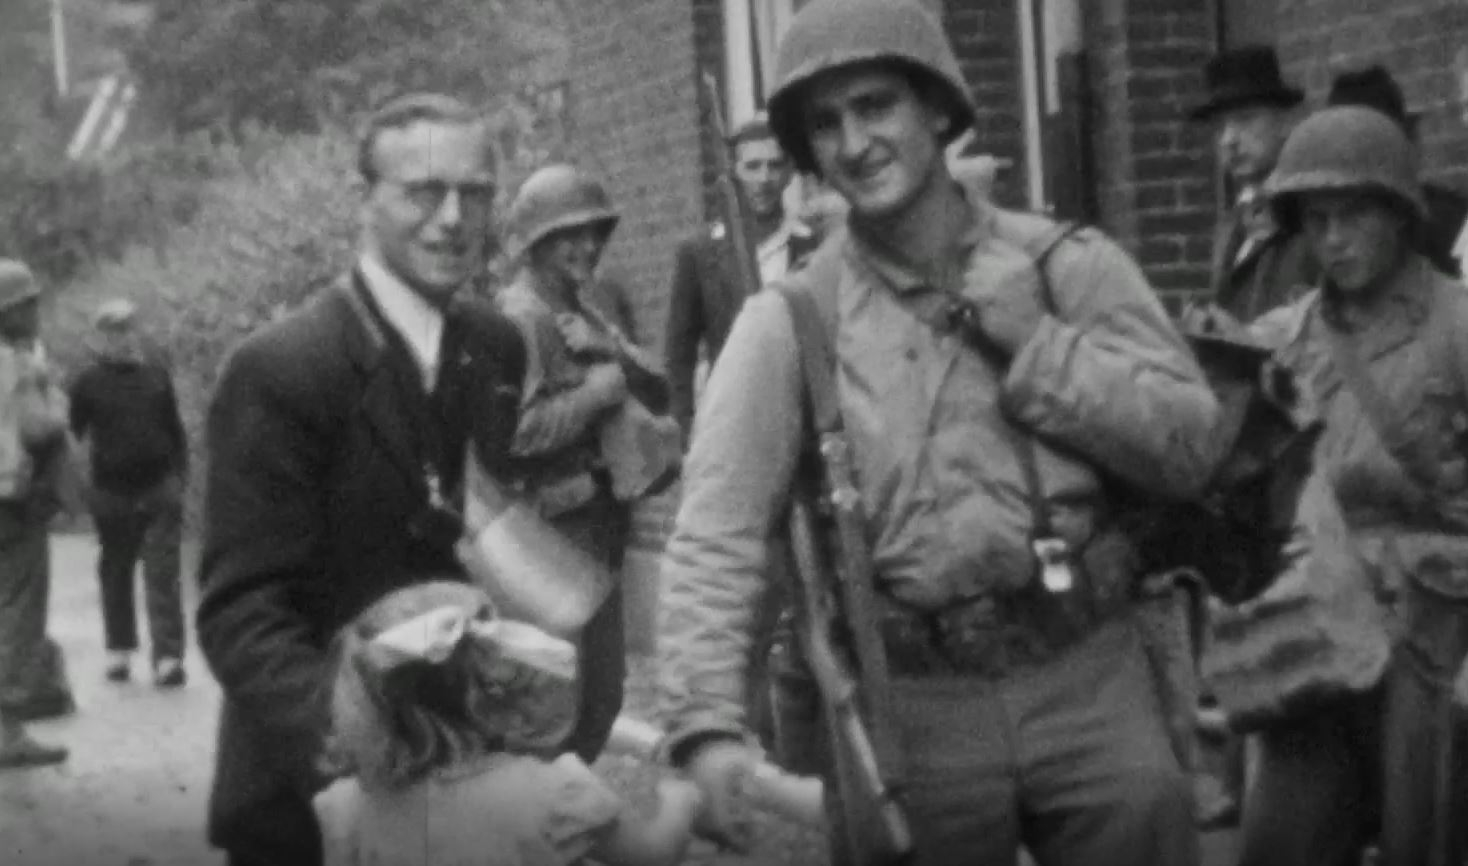 Stills uit de Graaflandfilm: Amerikaanse soldaten poseren met burgers tijdens de bevrijding van Maastricht in september 1944